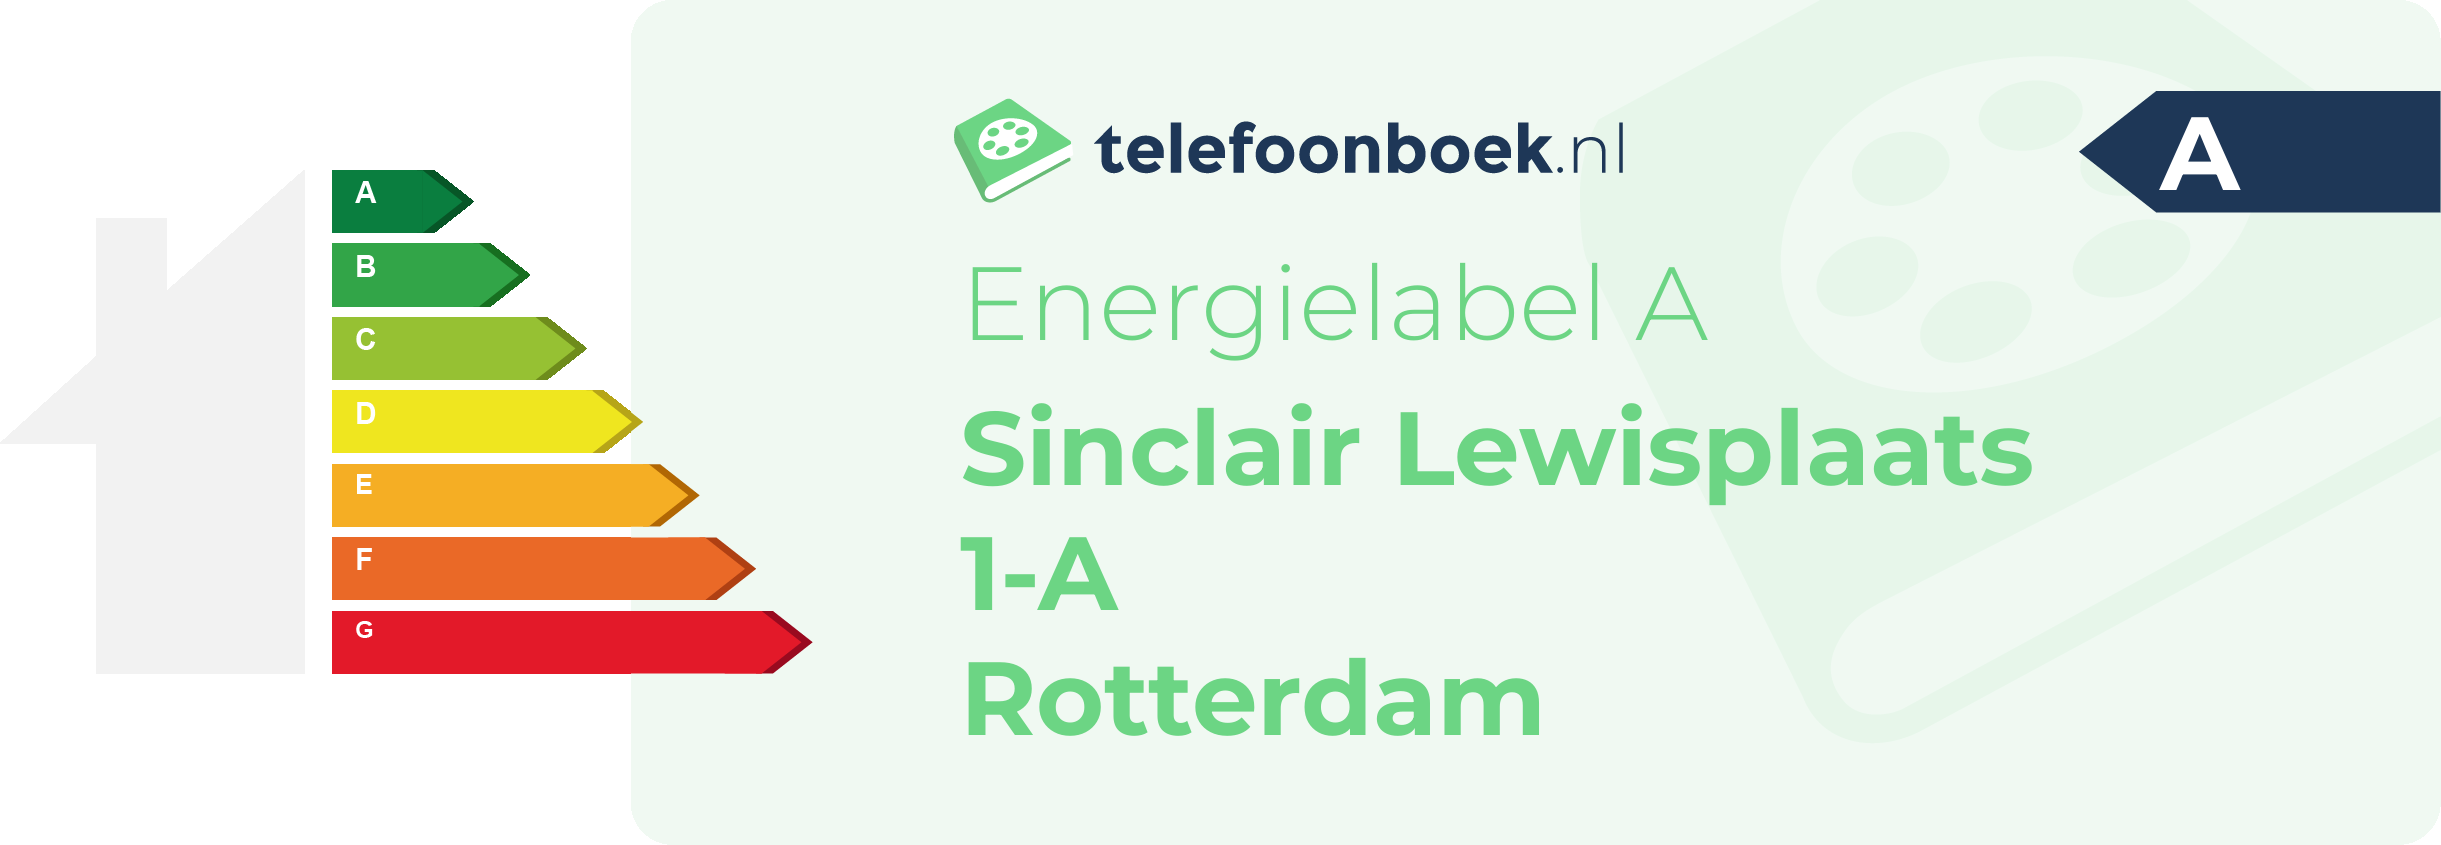 Energielabel Sinclair Lewisplaats 1-A Rotterdam